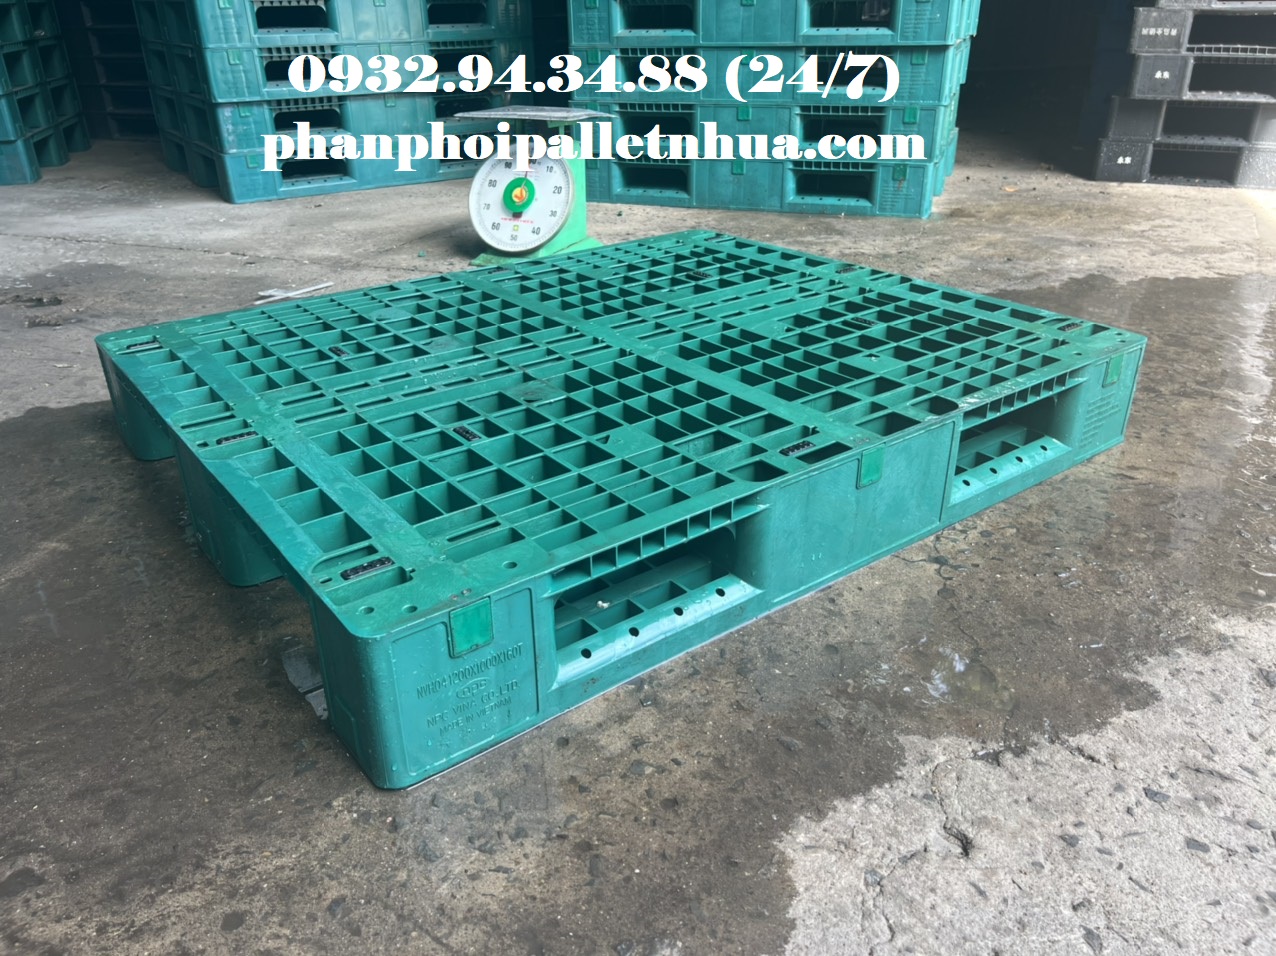 Phân phối pallet nhựa giá rẻ tại Trà Vinh,  liên hệ 0932943488 (24/7)